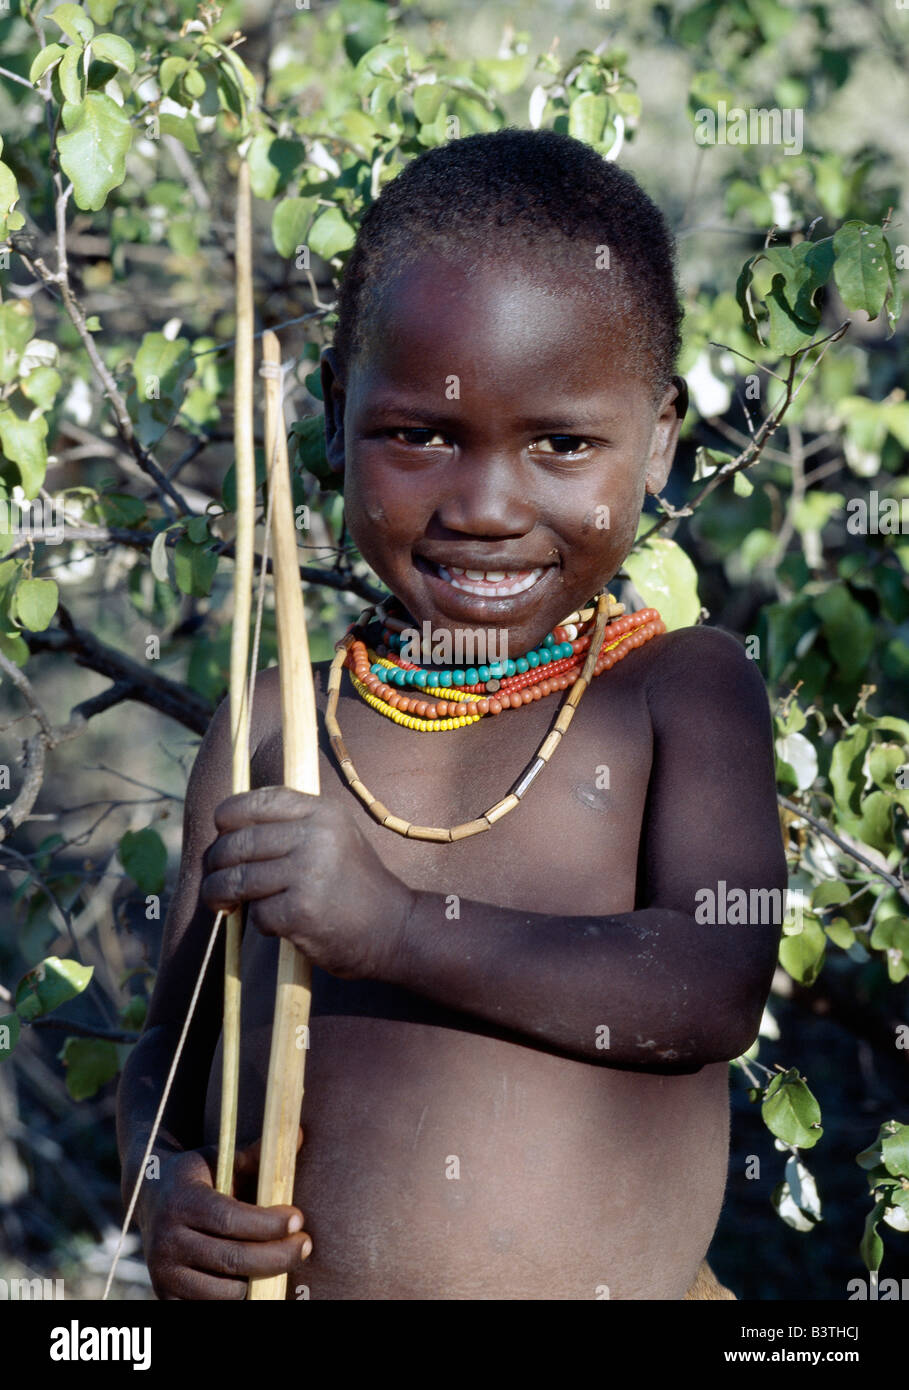 Tanzania, Arusha, lago Eyasi. Un muchacho Hadza llevando un arco y una flecha. Los Hadzabe son mil-fuerte comunidad de cazadores-recolectores que vivían en la cuenca del lago Eyasi durante siglos. Ellos son uno de sólo cuatro o cinco sociedades en el mundo que todavía viven principalmente de recursos silvestres. Foto de stock